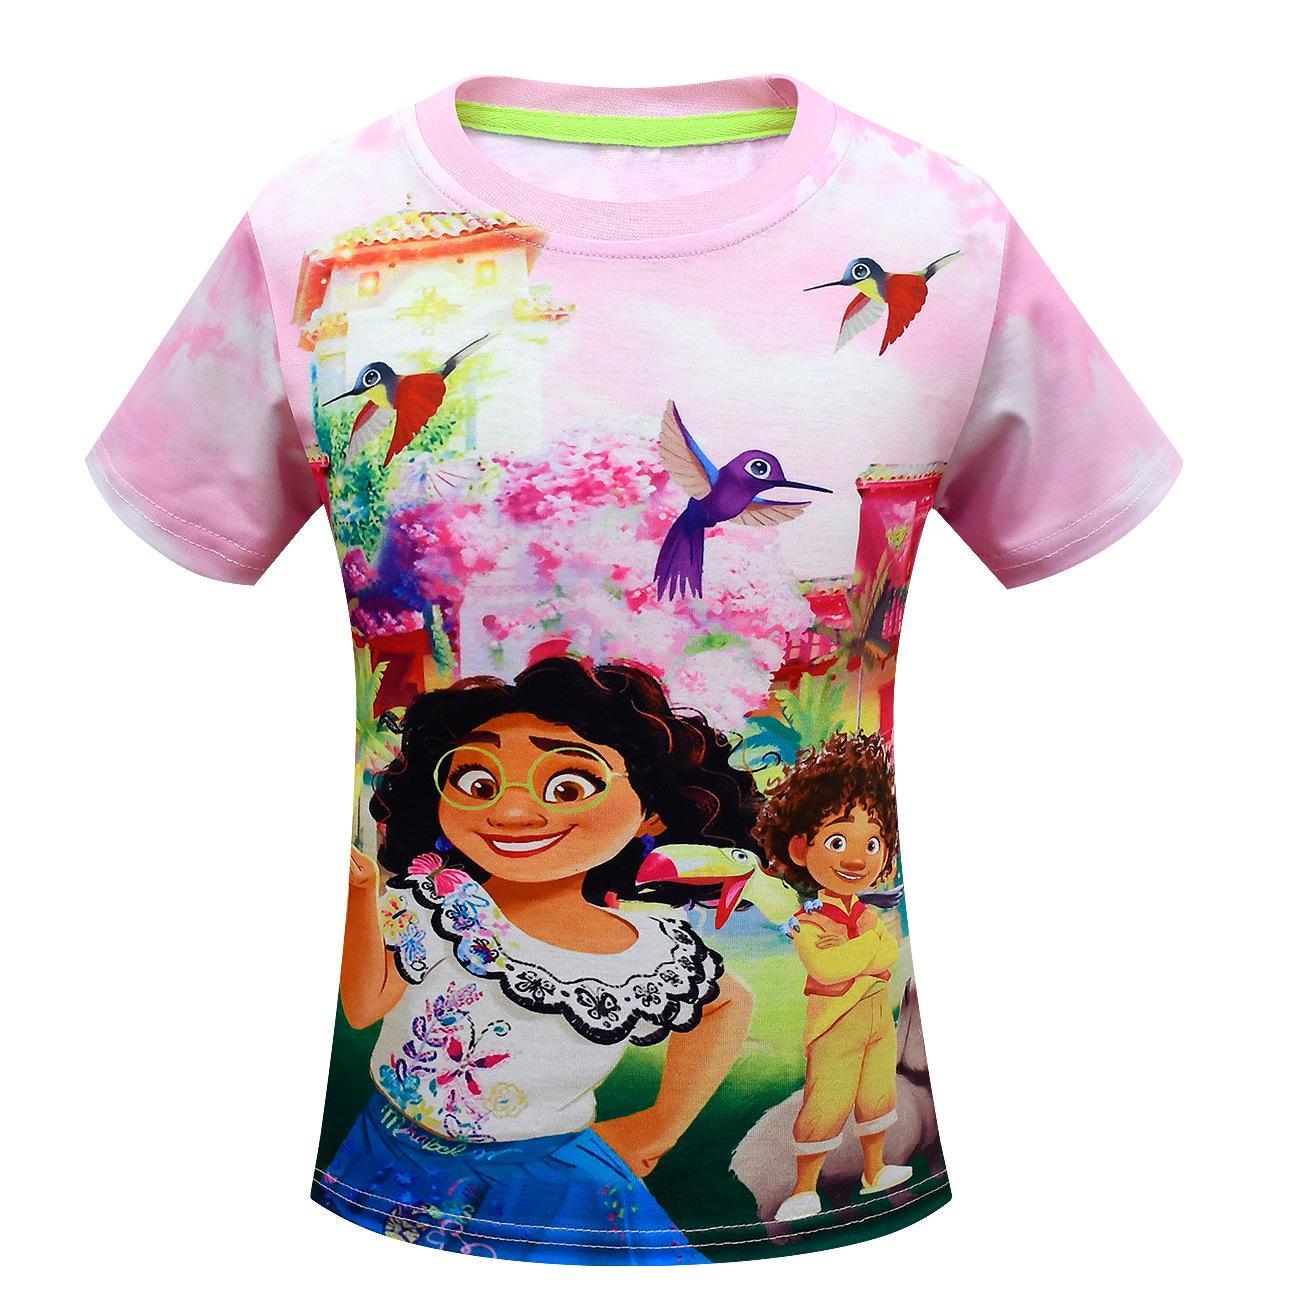 Vicanber Encanto Mirabel Printed T-Shirt Kids Girl Summer Tops Tee Shirts HOT(7-8Year)